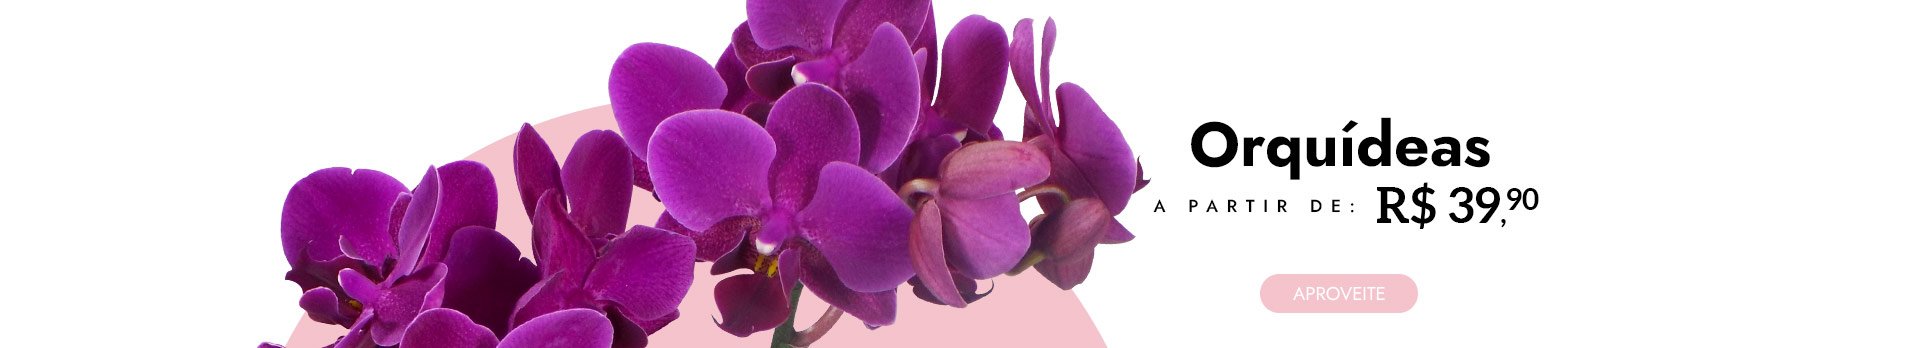 Orquídeas a partir de R$39,90